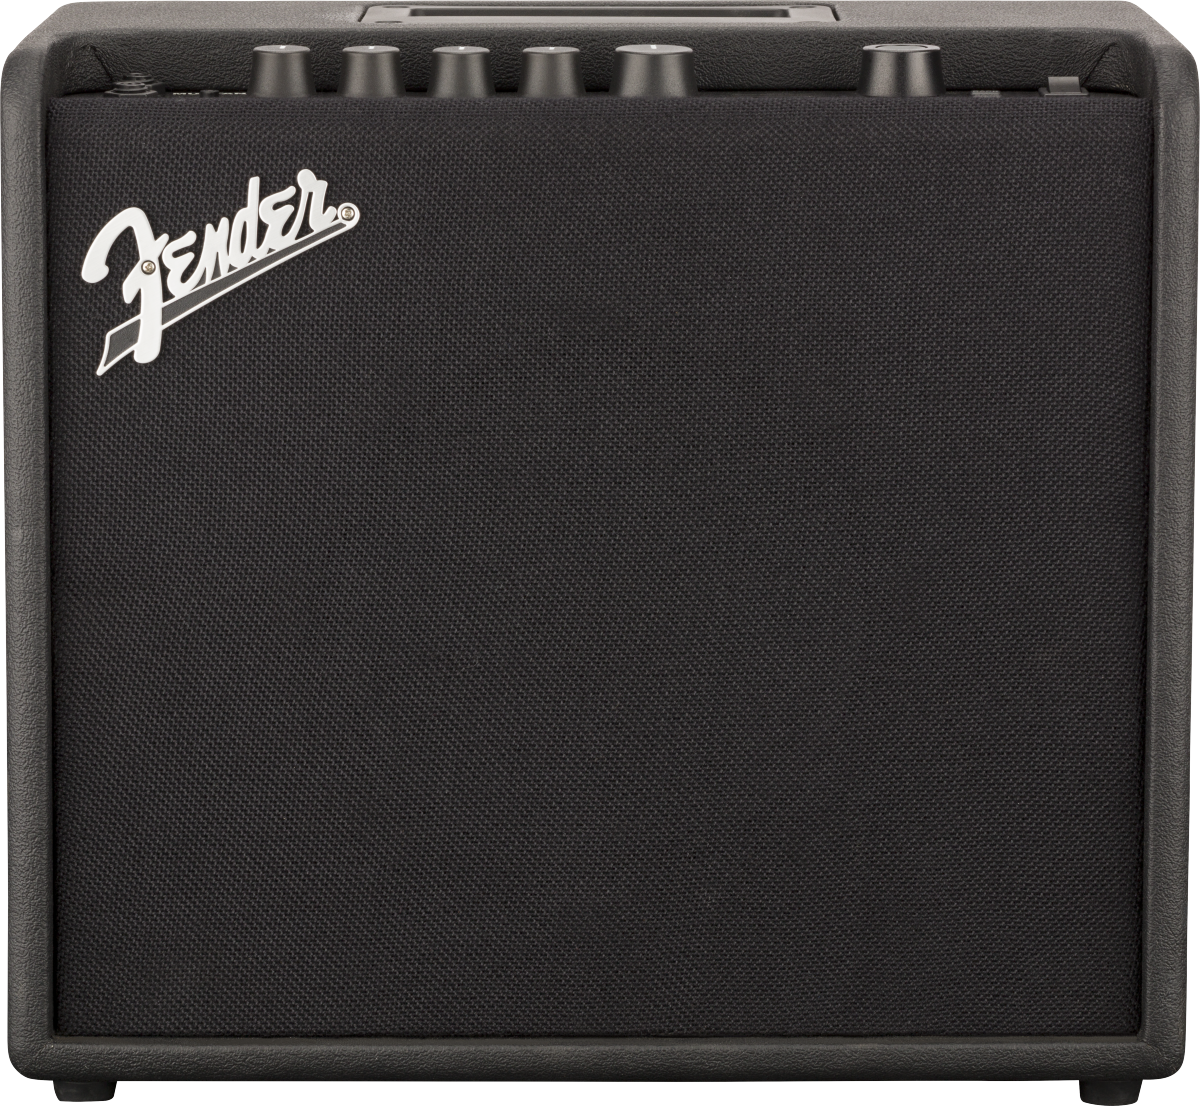 Fender Mustang™ LT25 Digital Guitar Amp